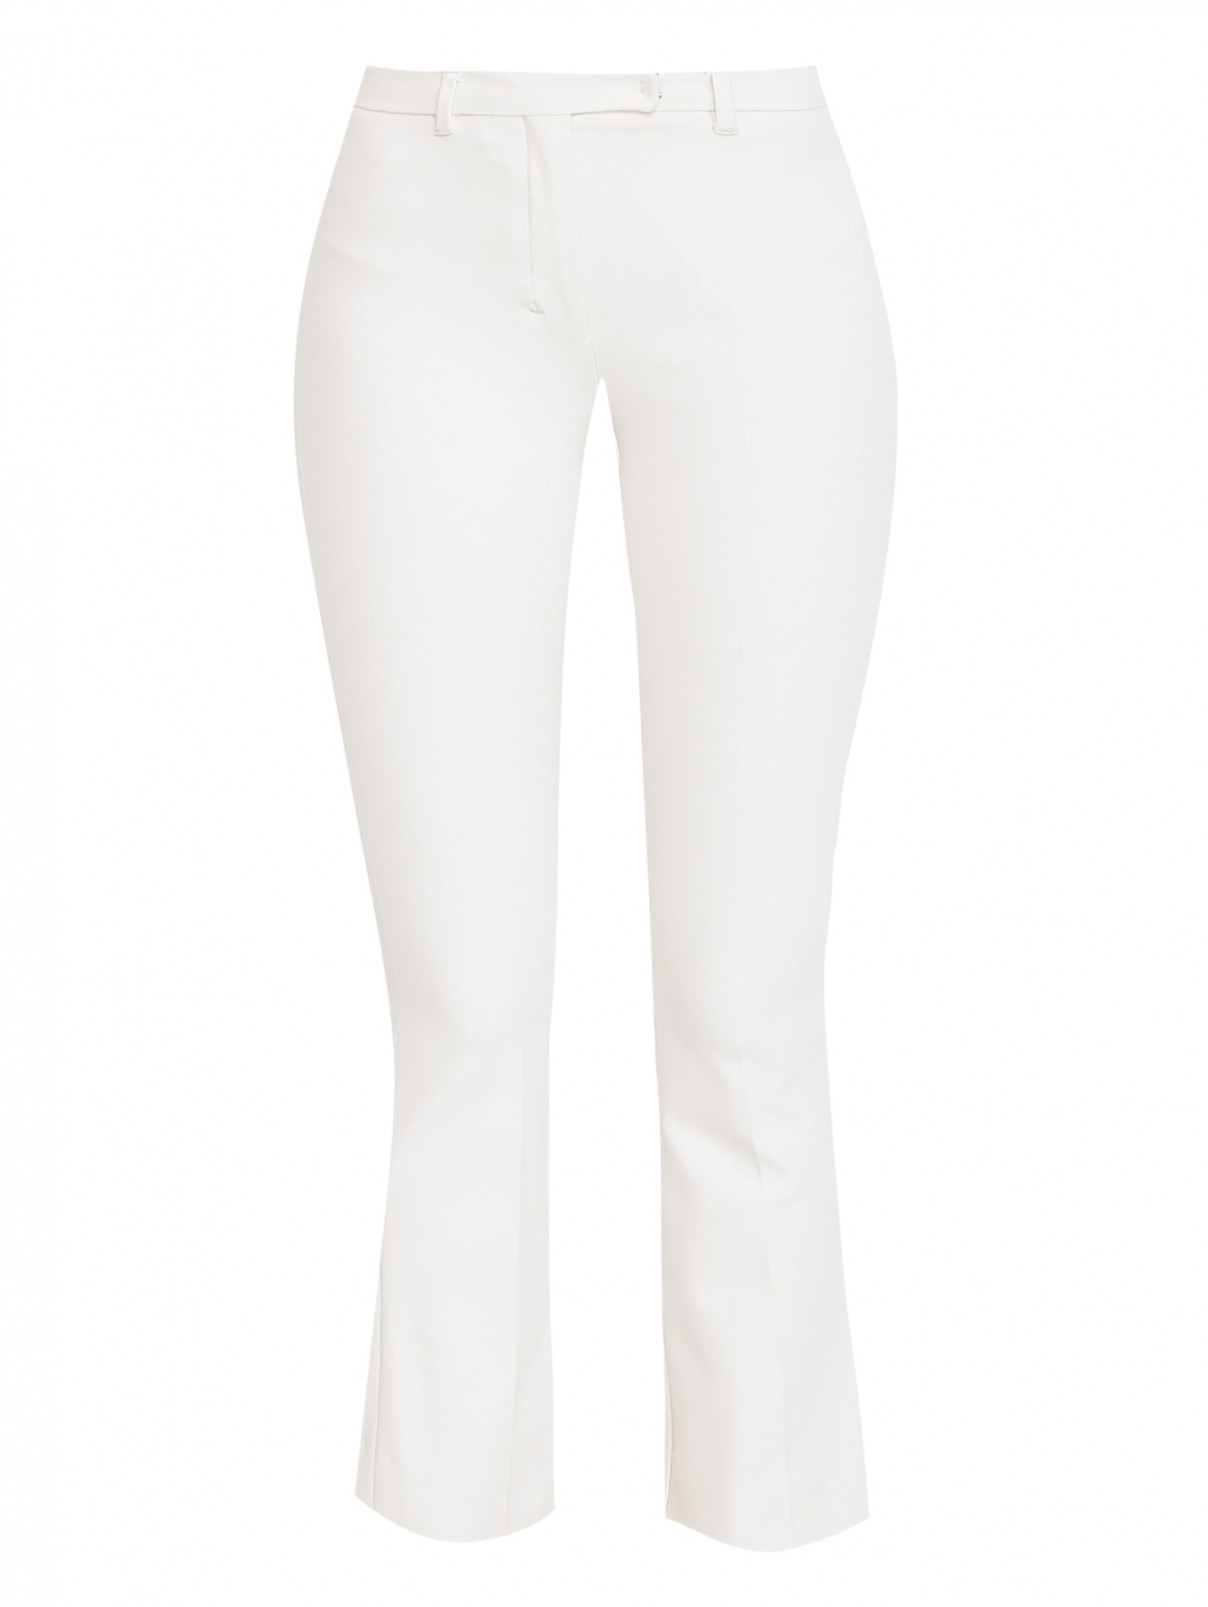 Укороченные брюки из хлопка и вискозы Max Mara  –  Общий вид  – Цвет:  Белый